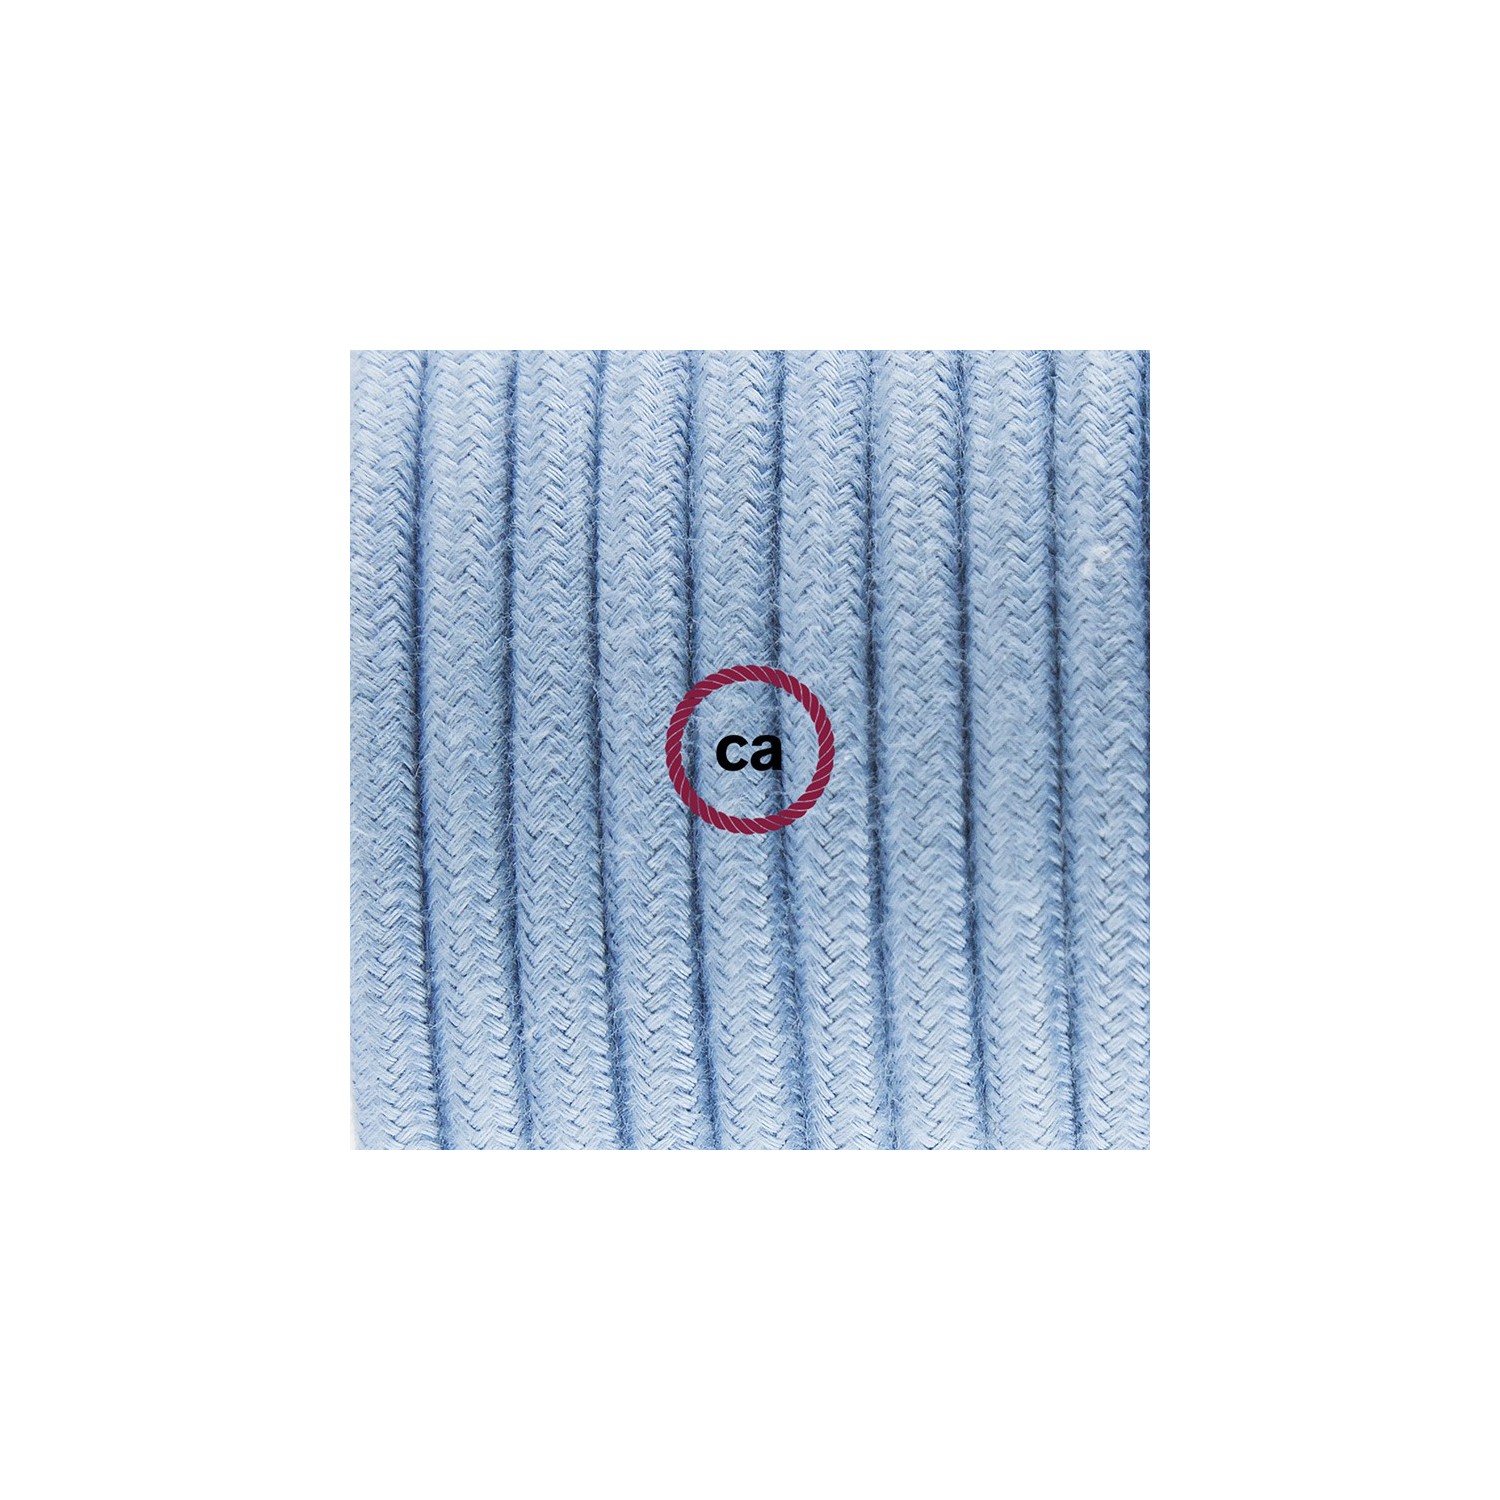 Ronde flexibele textielkabel van katoen met schakelaar en stekker. RC53 - oceaan blauw 1,80 m.